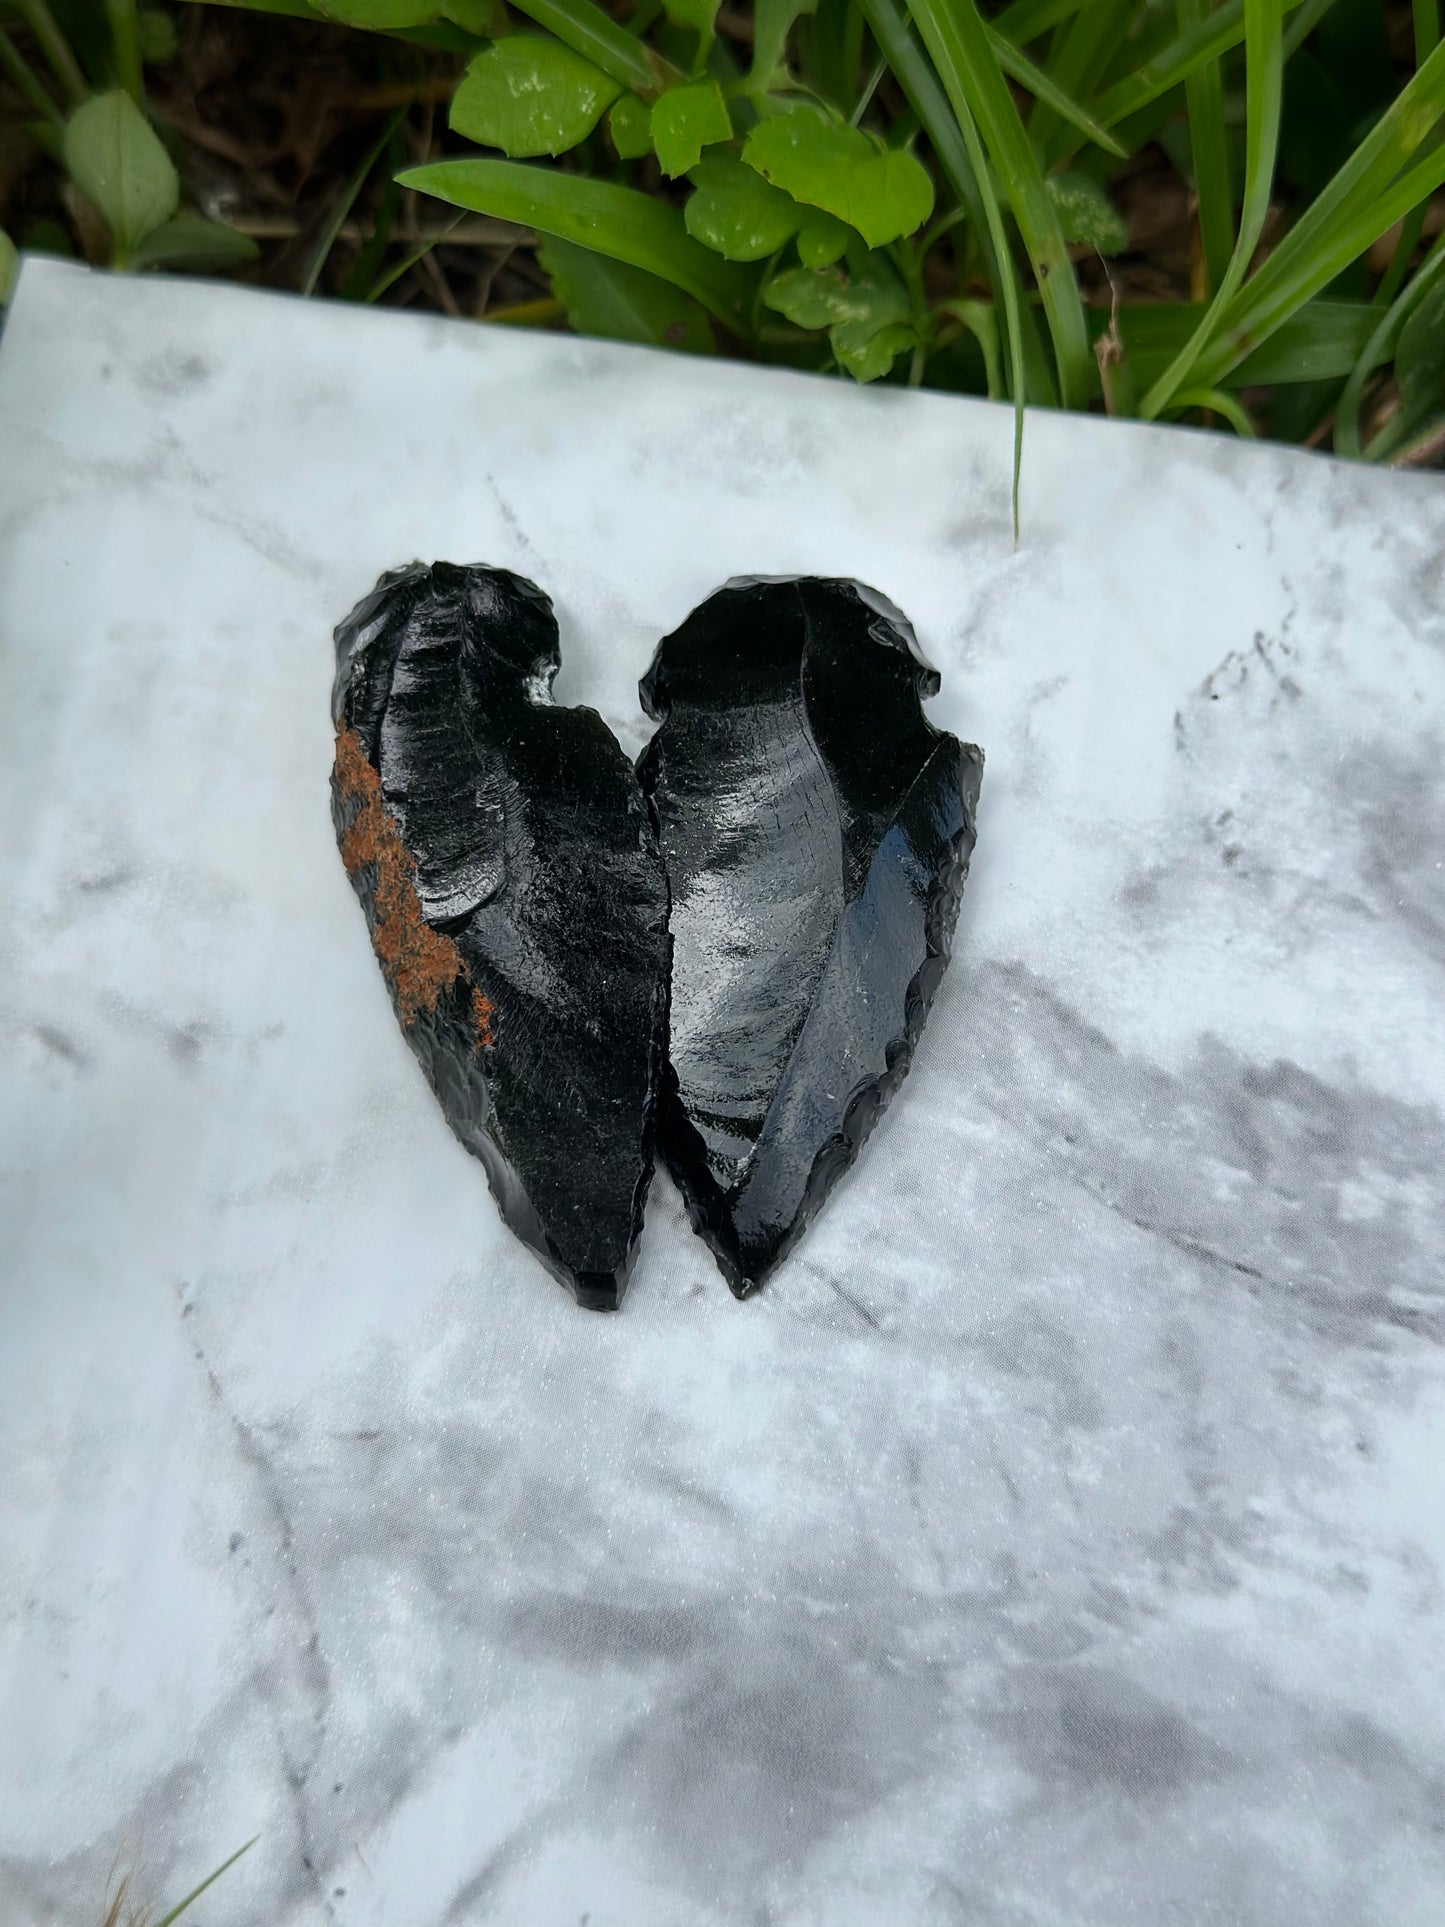 Black obsidian arrowhead